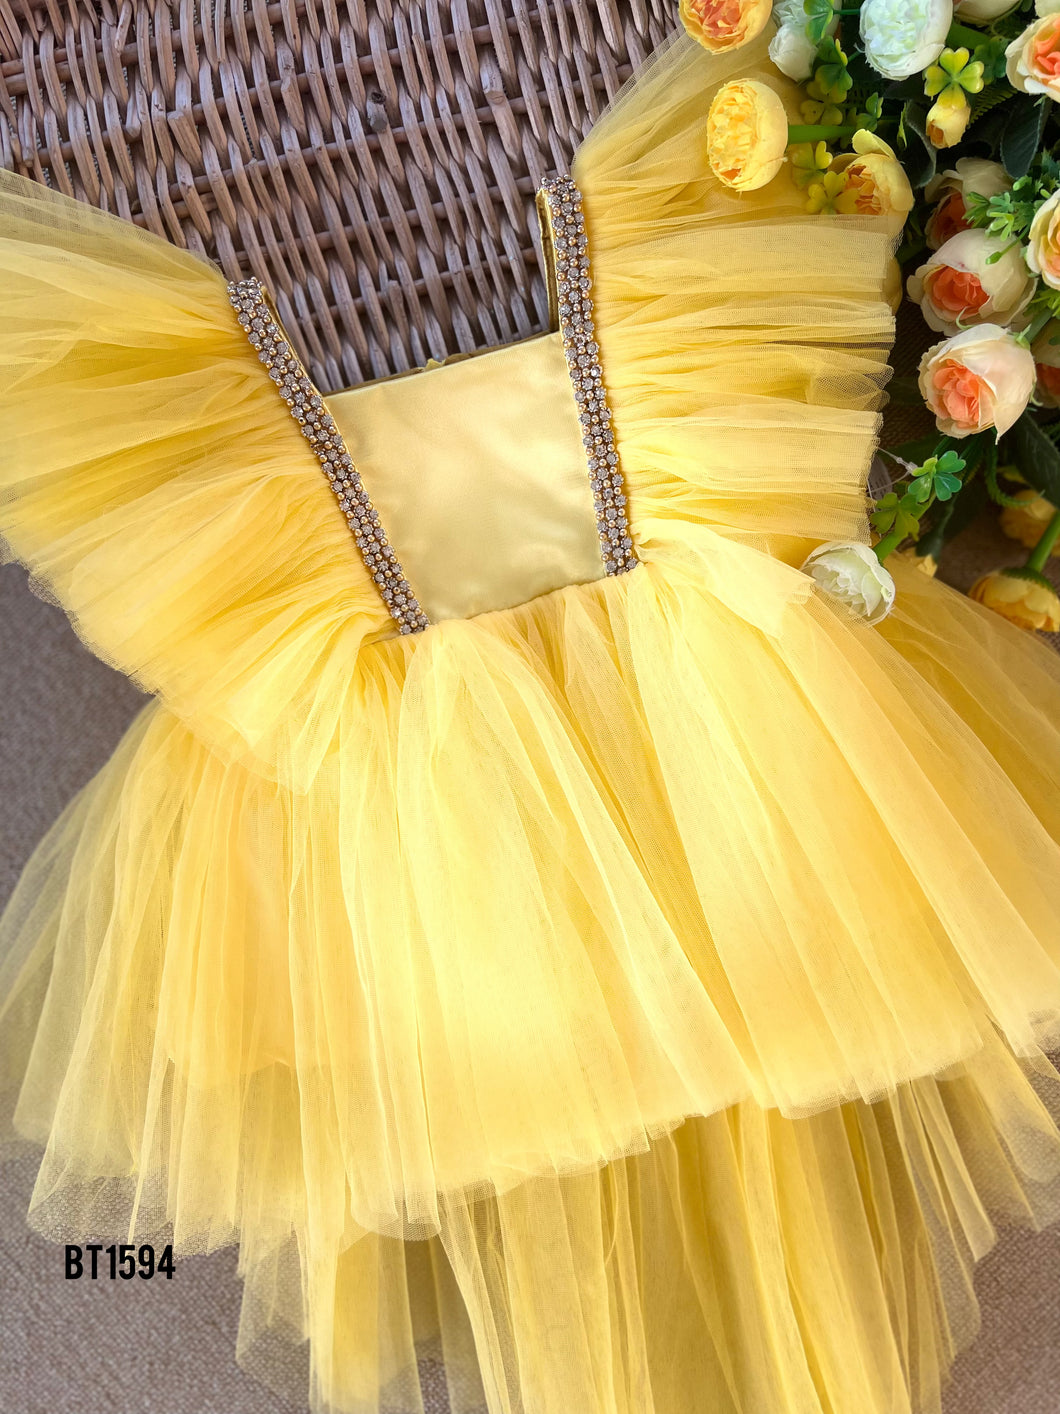 BT1594 Sunshine Elegance: A Little Princess' Dream Dress